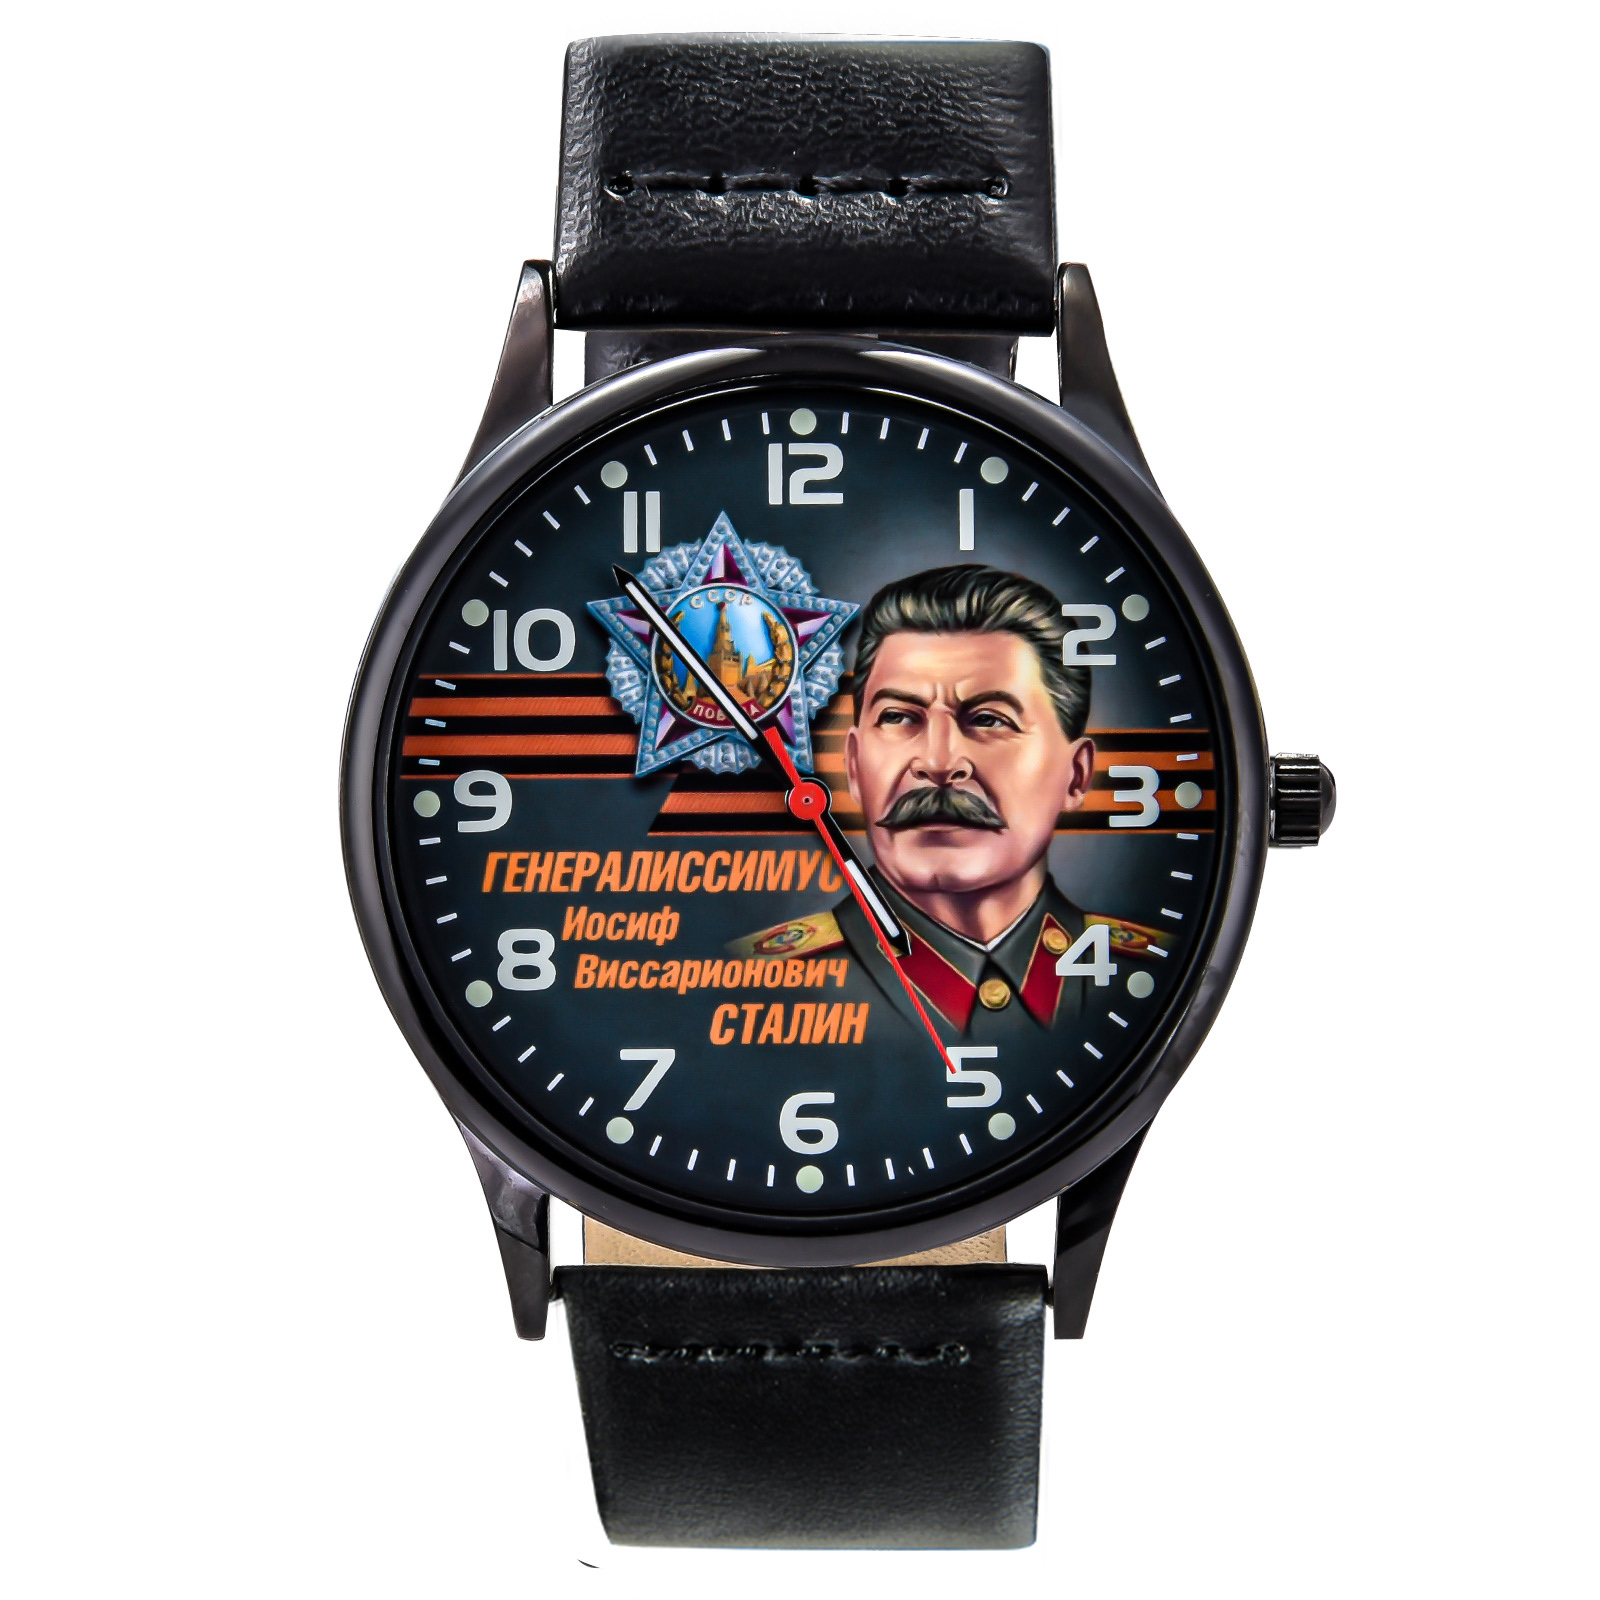 Командирские часы Сталин